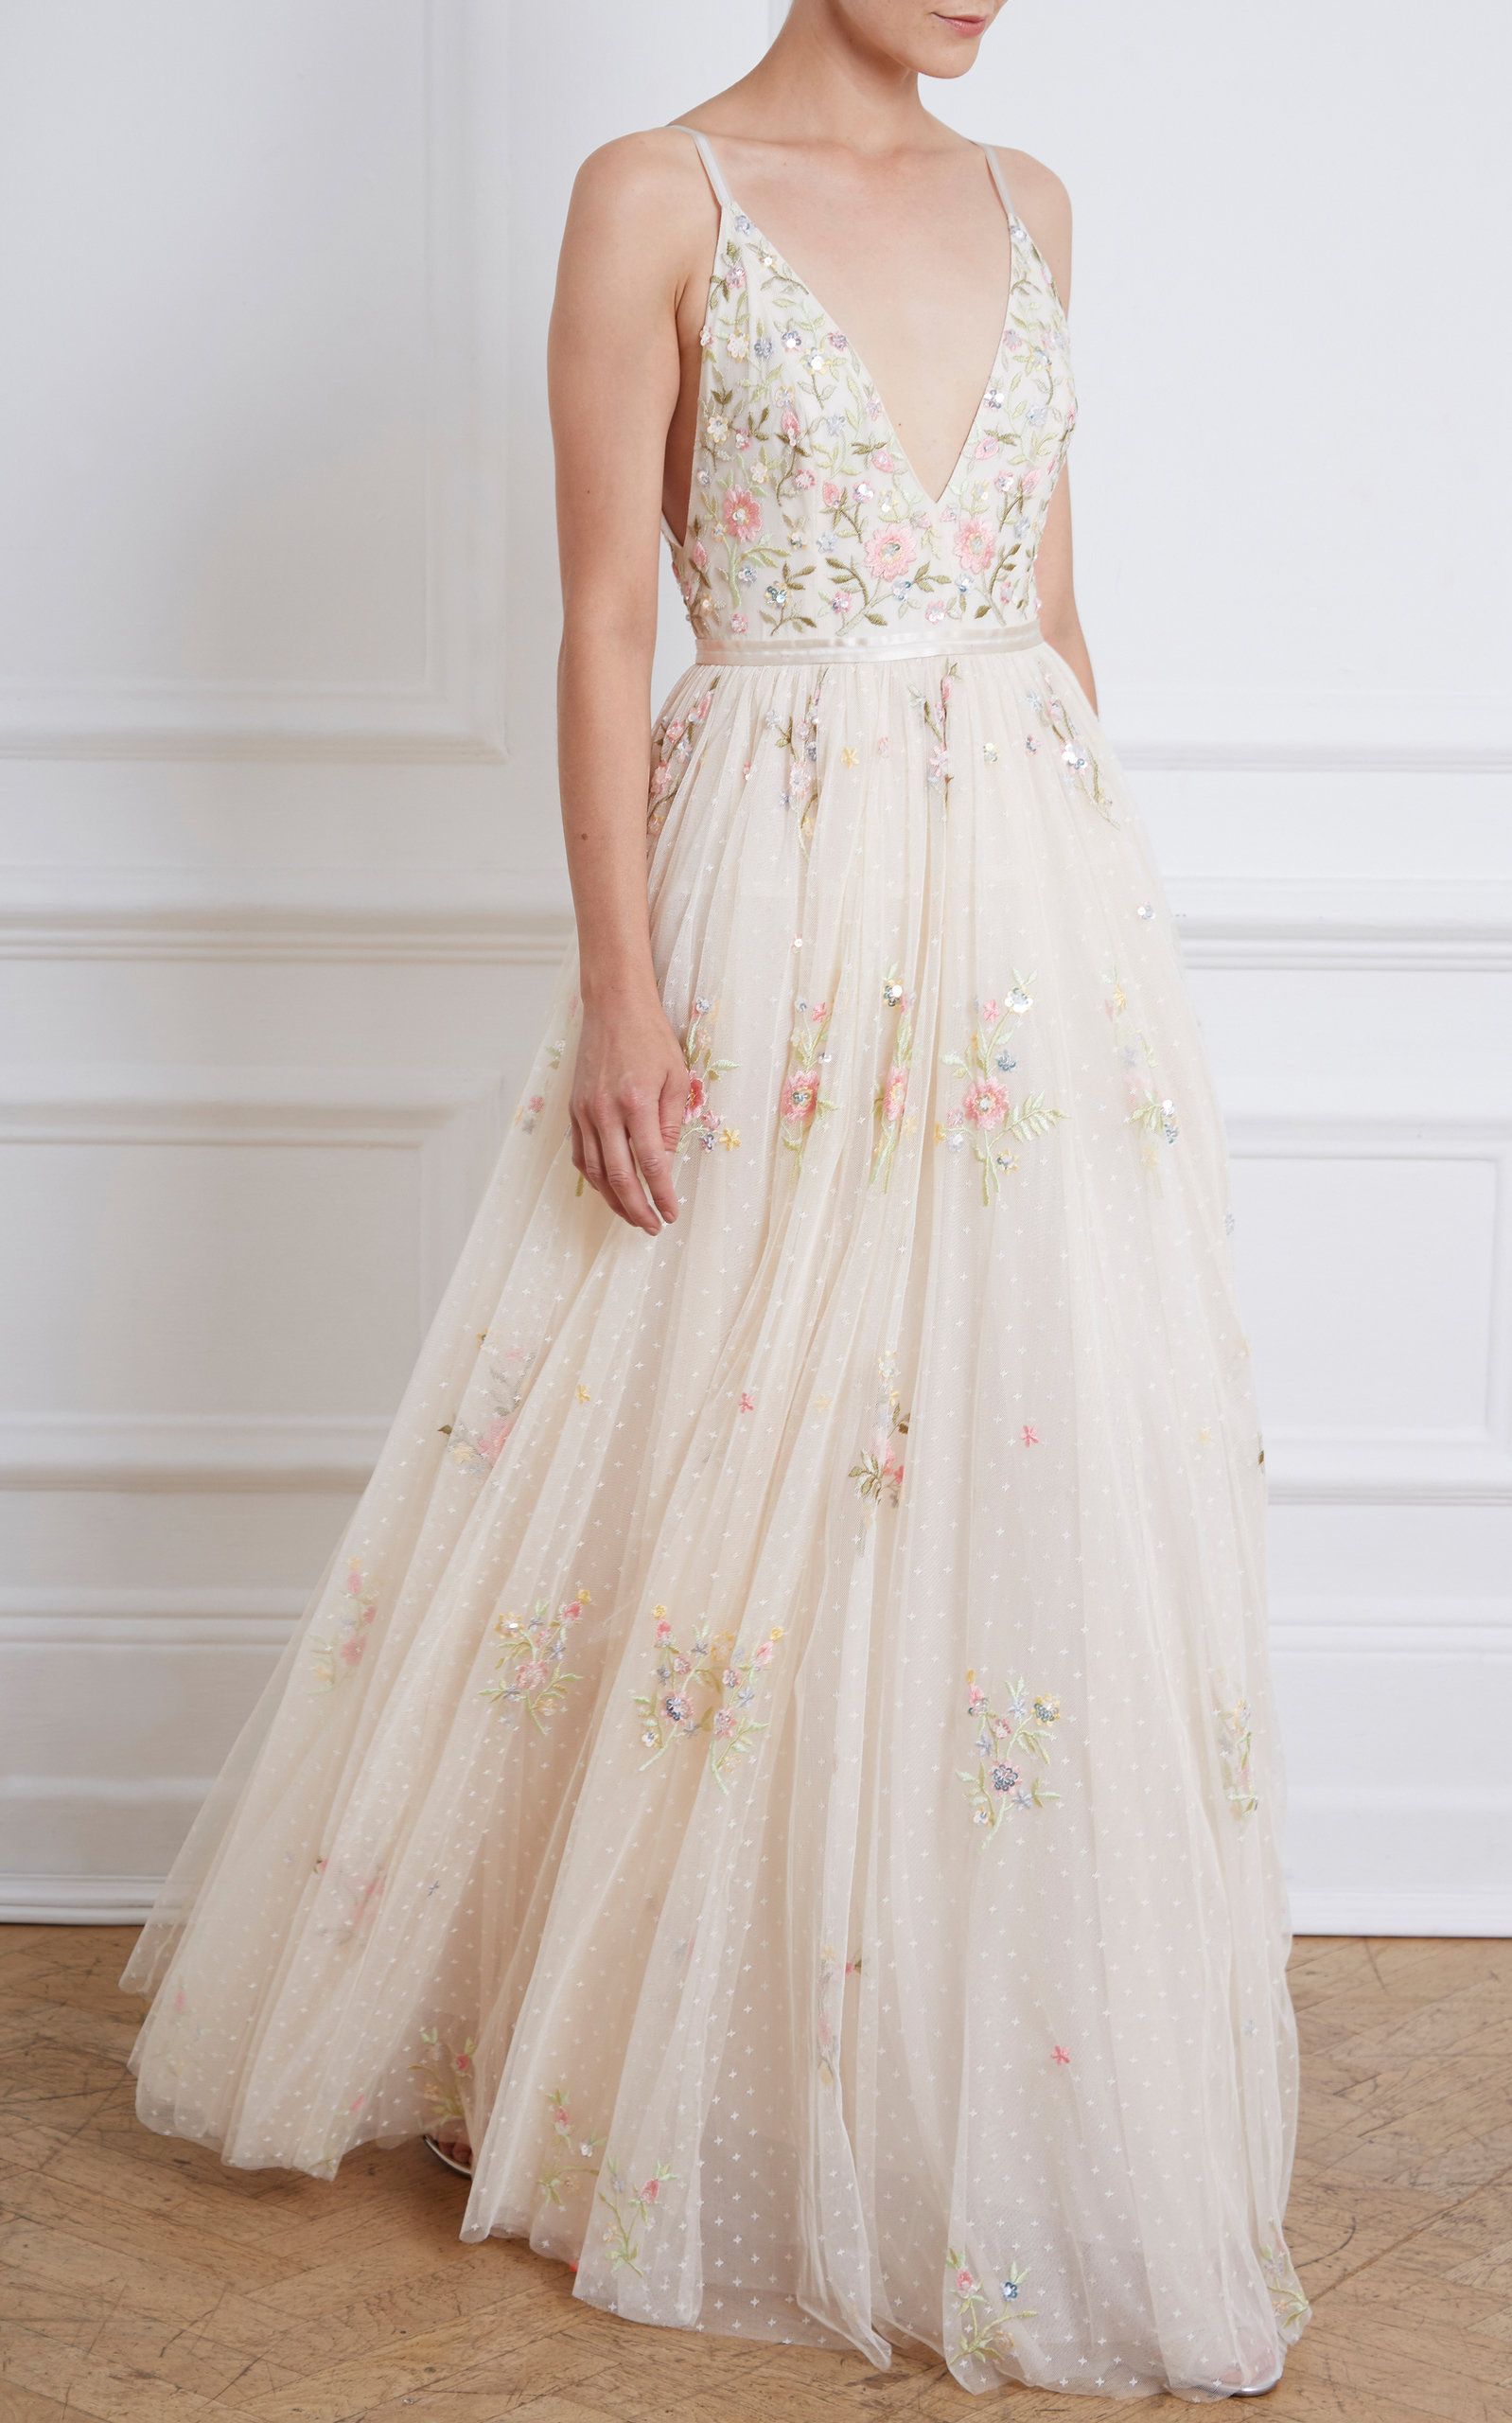 16 beauty Dresses floral ideas